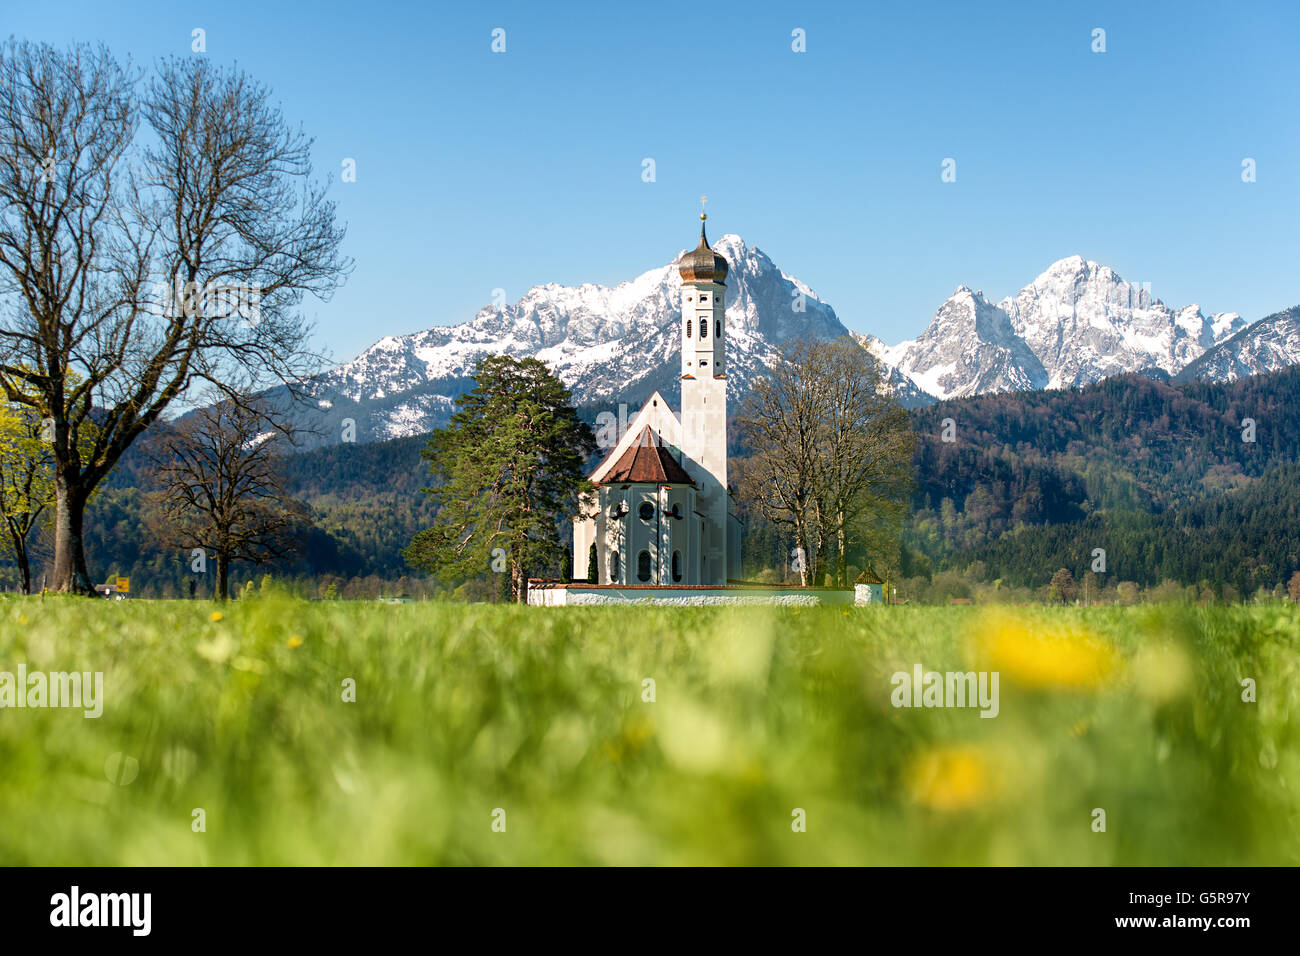 Landschaft aus München, Deutschland - Landschaft der Kirche mit Schneeberg in der Nähe von München. München ist die Hauptstadt und größte Stockfoto